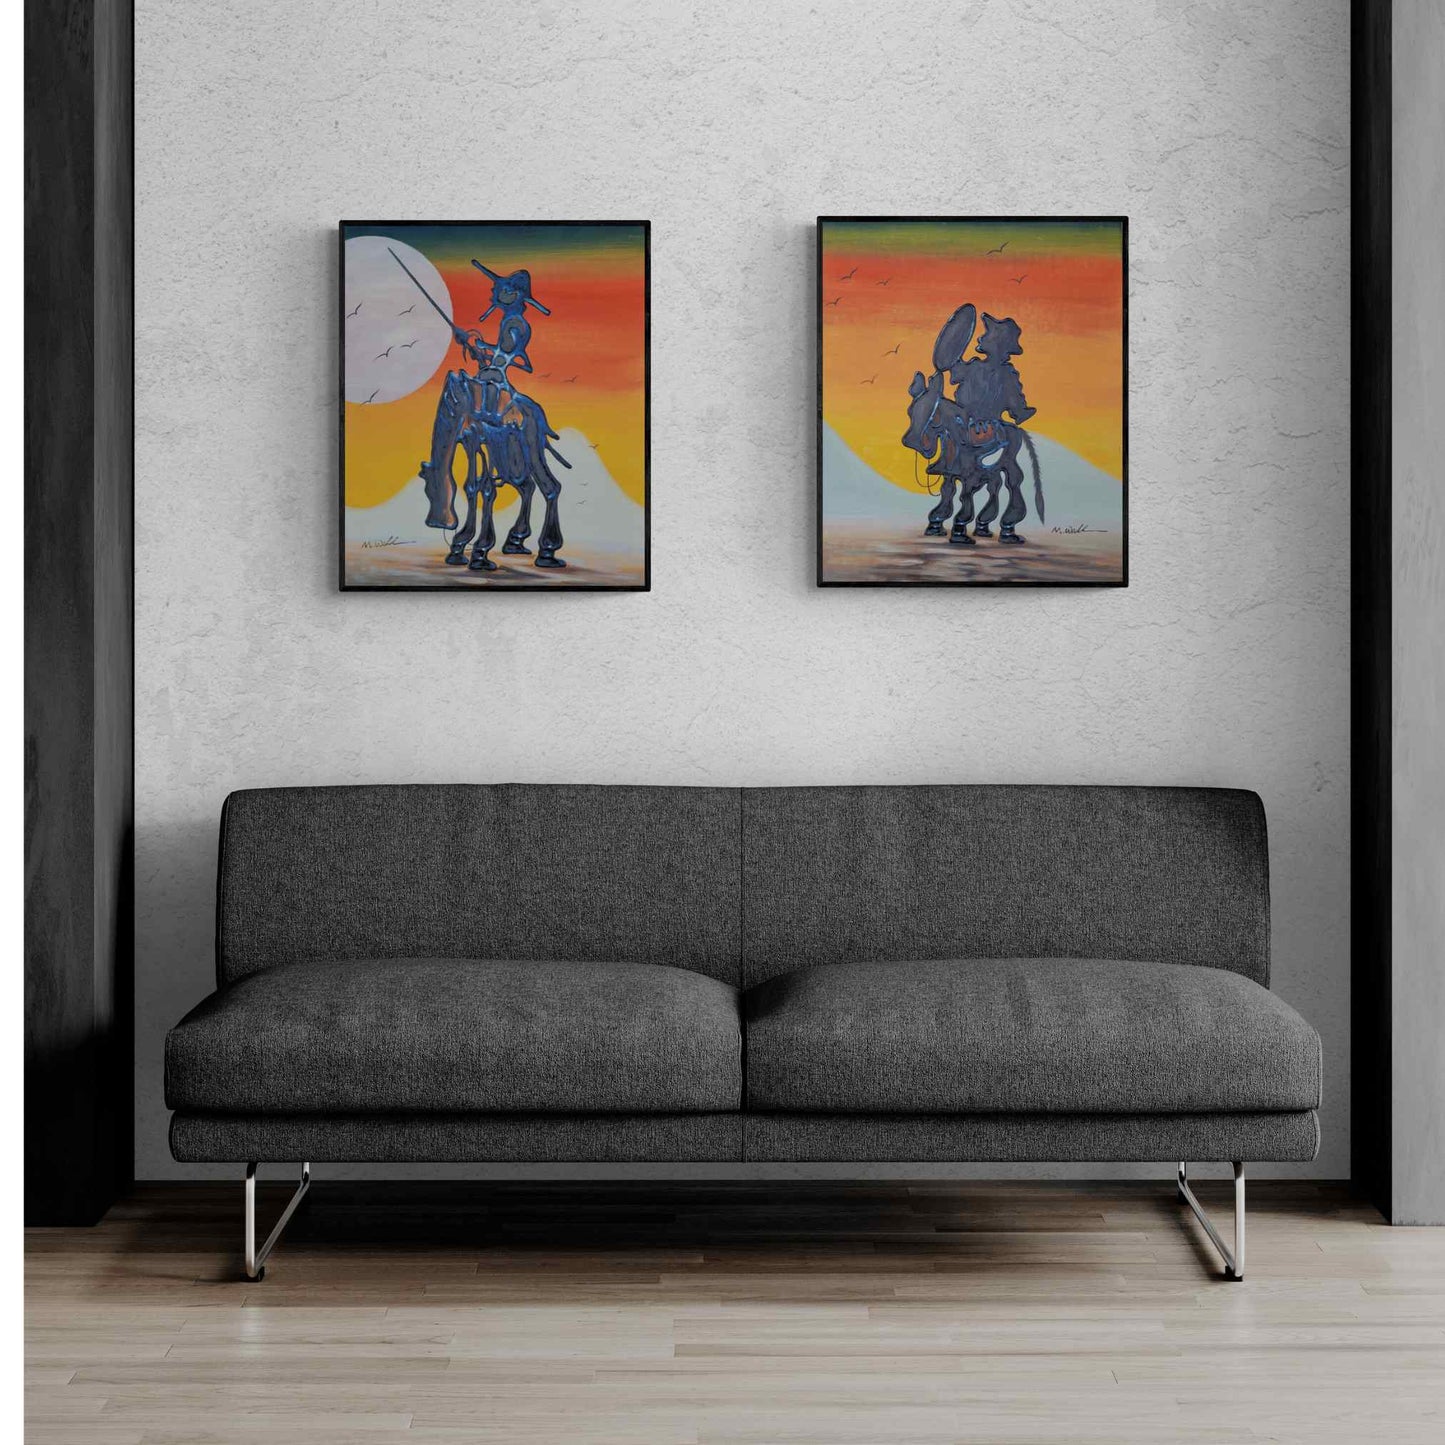 Don Quixote and Sancho painting 50X60 cm [2 pieces]